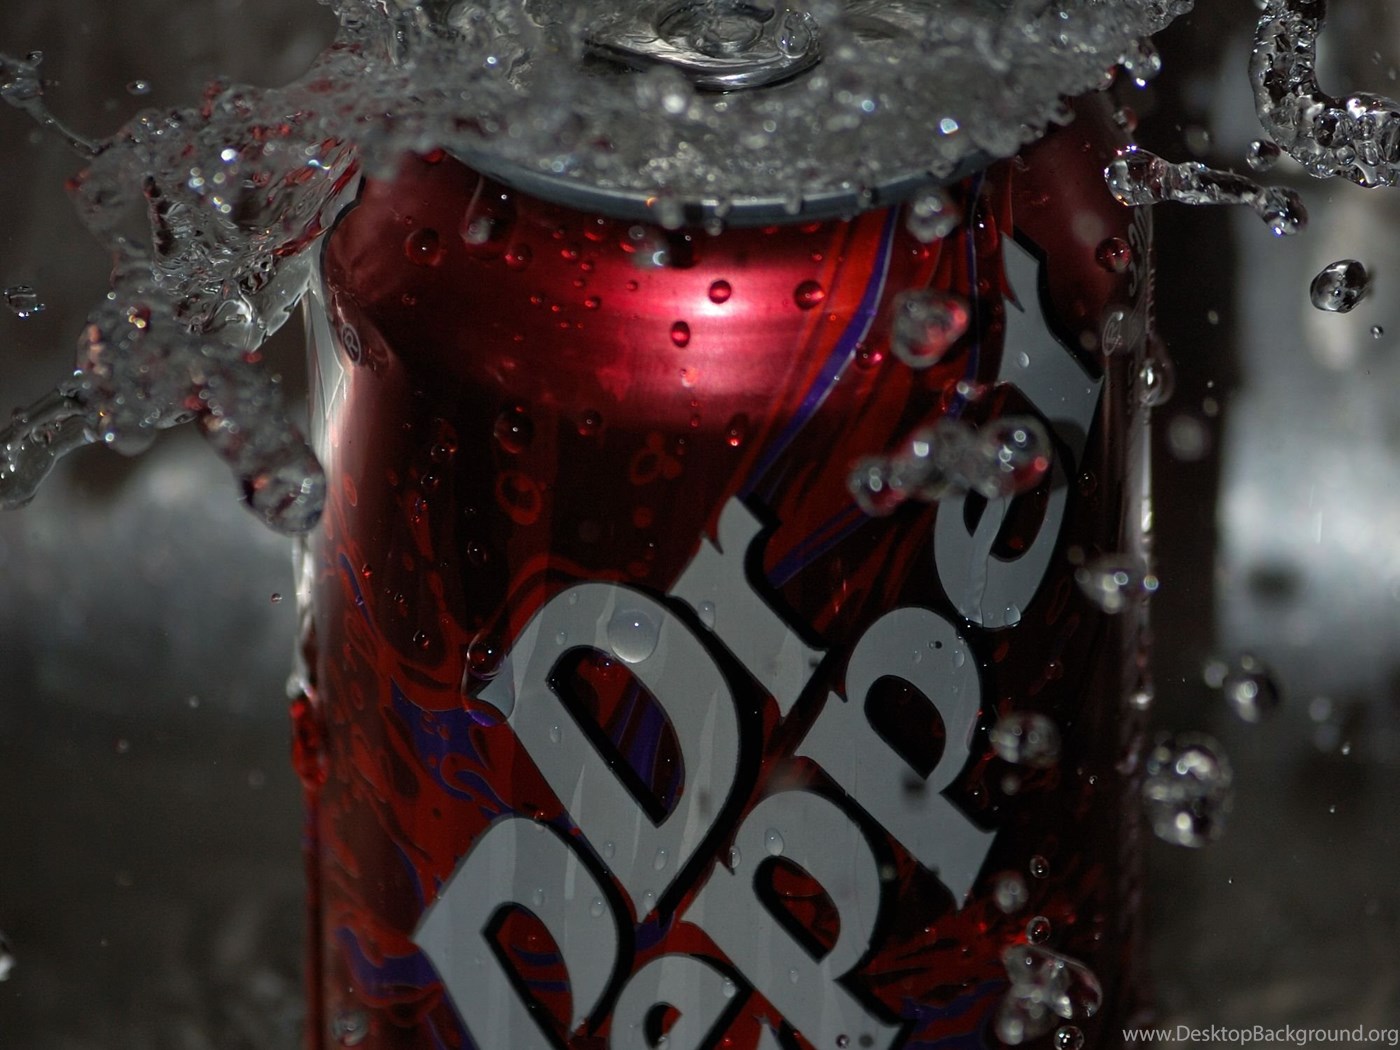 Download Dr Pepper By M 2 U On DeviantArt Fullscreen Standart 4:3 1400x1050...